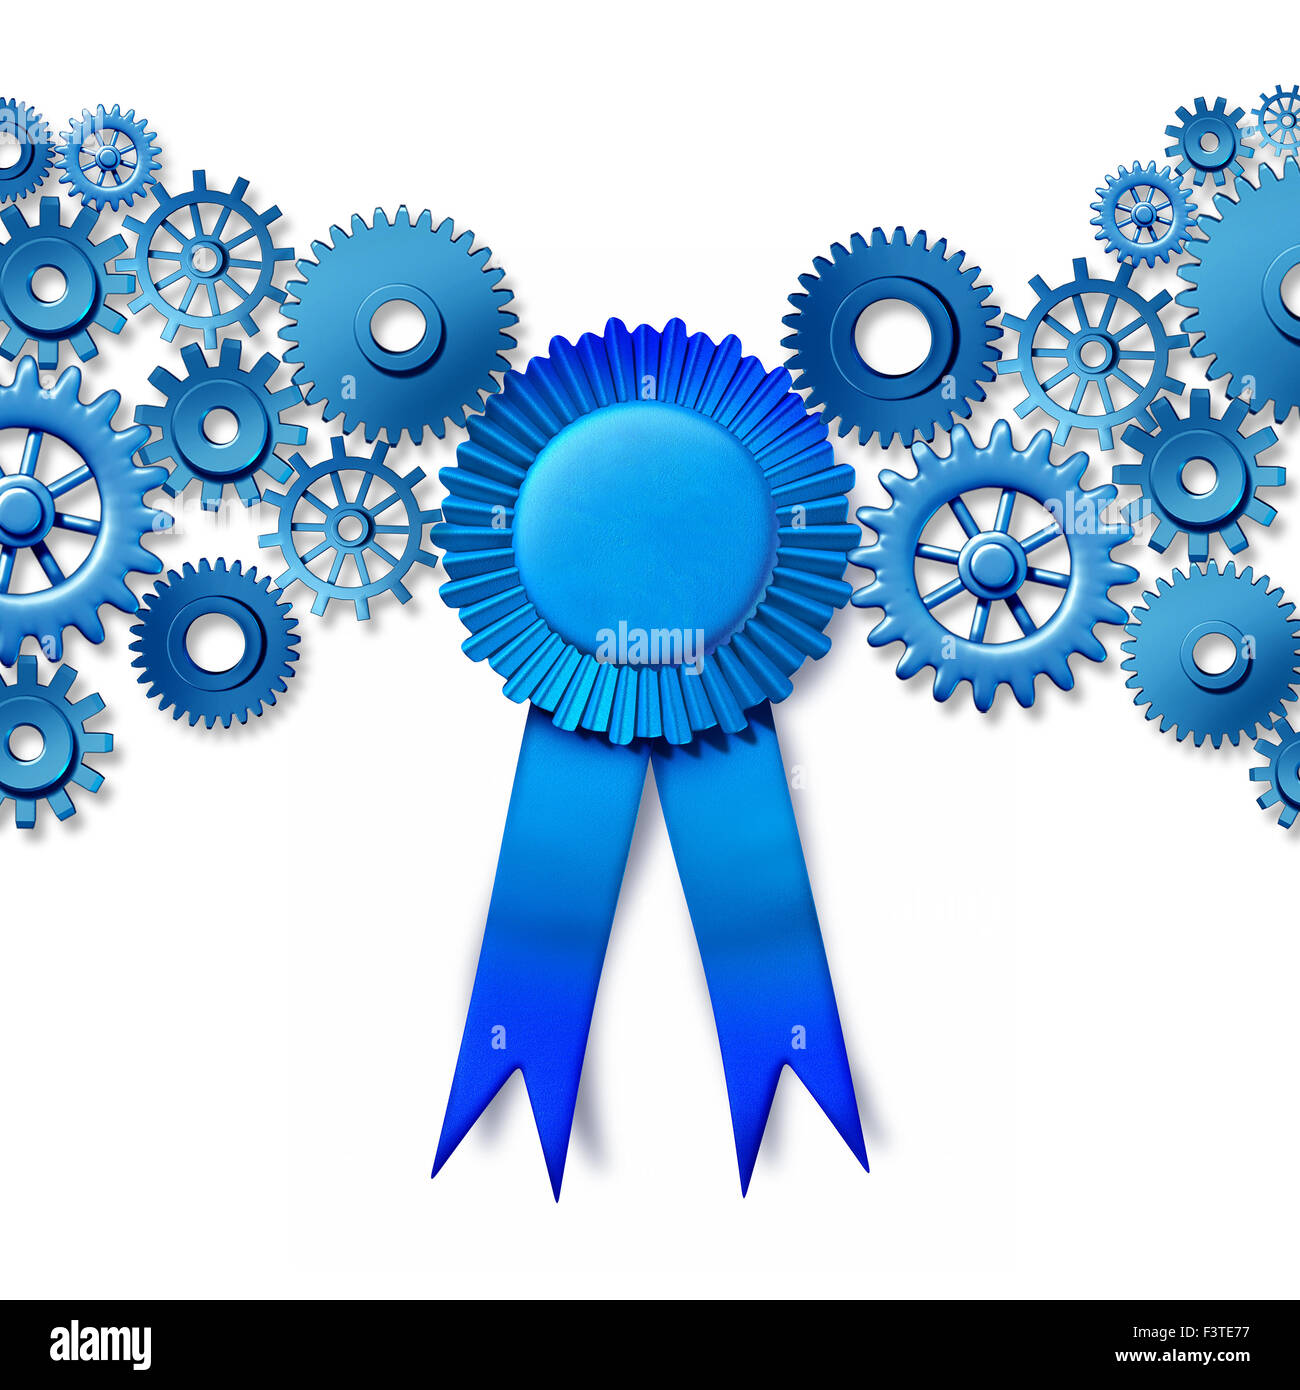 Business award nozione come un nastro blu ricompensa ruotando gli ingranaggi collegati e cog ruote come un settore di onore per la lavorazione di leadership e la migliore efficienza della tecnologia. Foto Stock